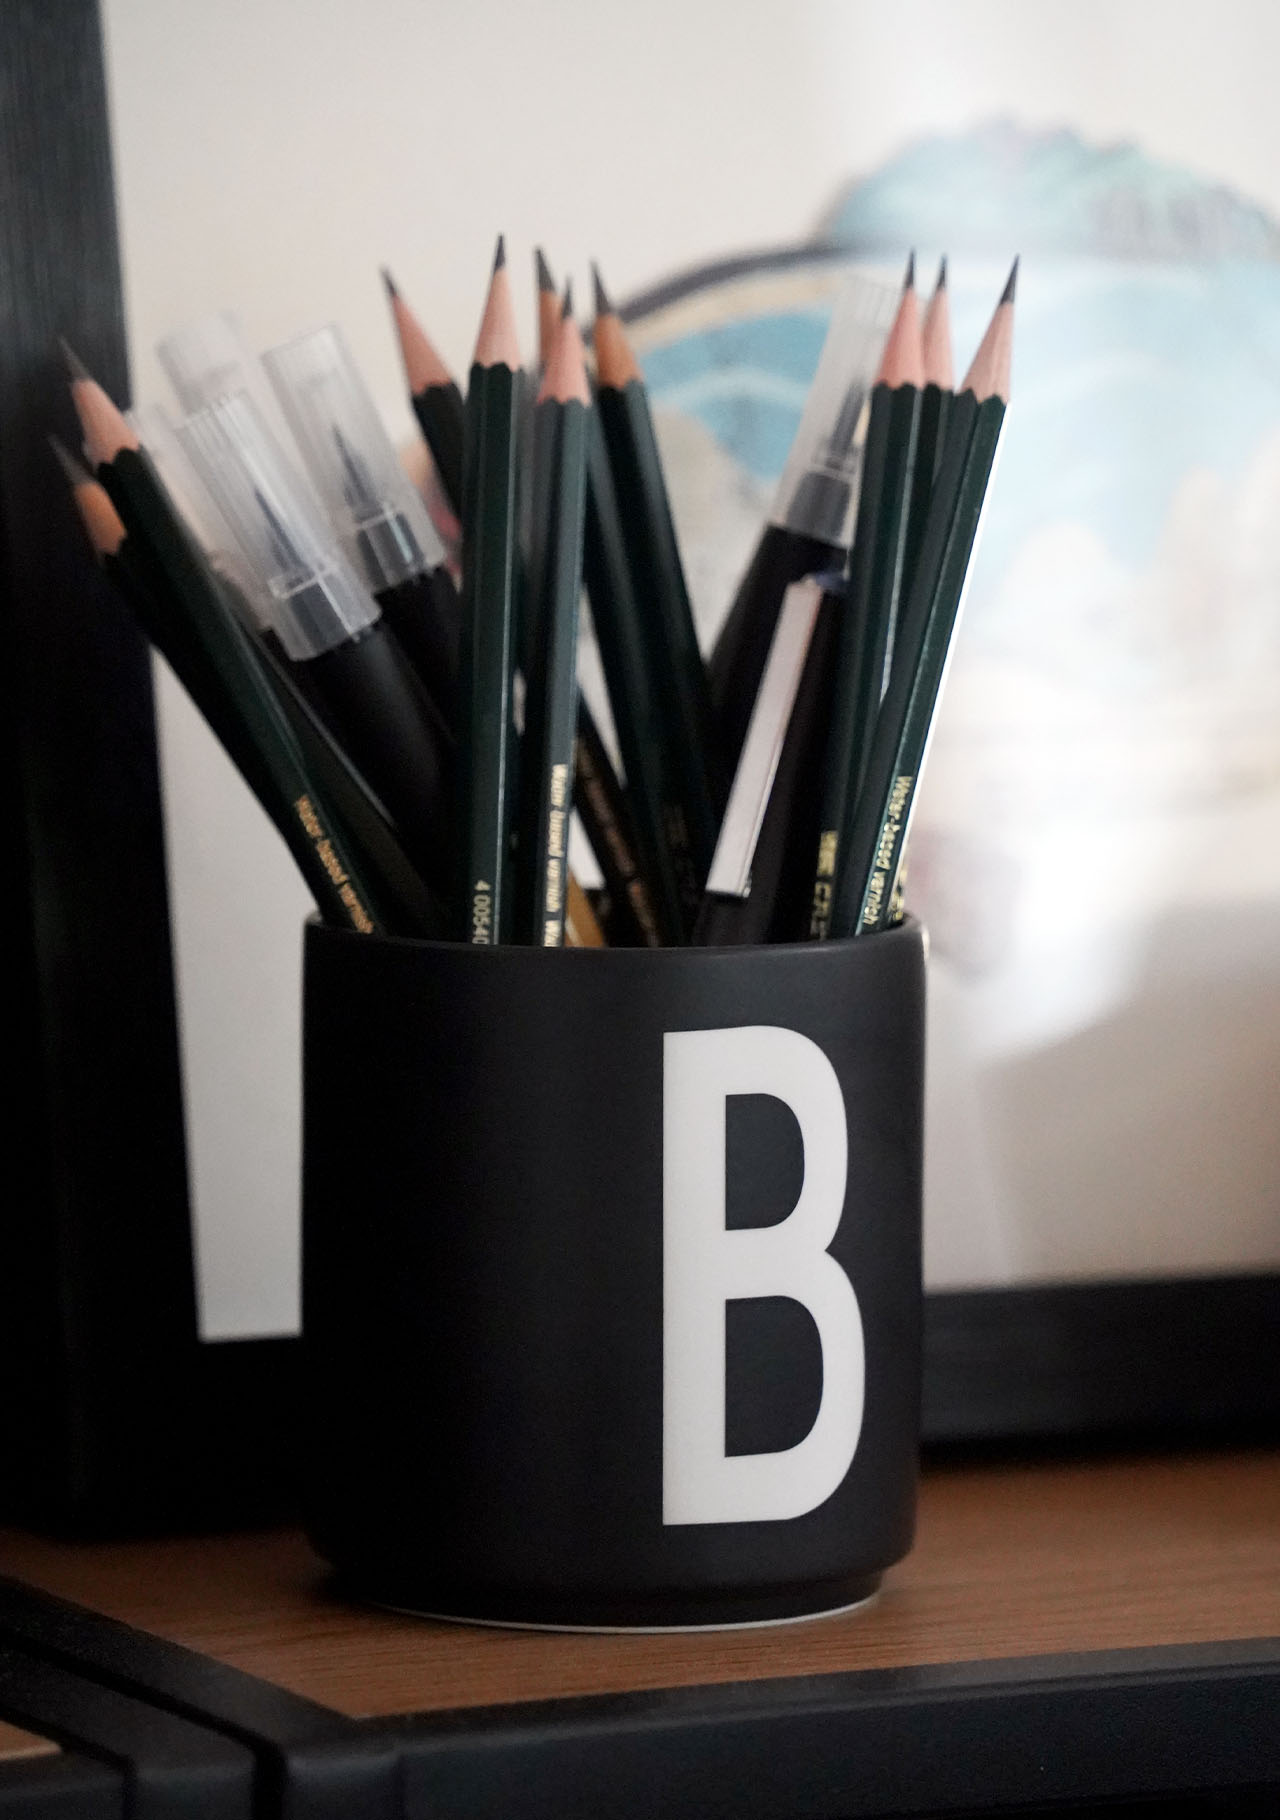 Das Bild zeigt eine schwarze Tasse mit einem weißen B darauf. Die Tasse ist gefüllt mit Bleistiften und Kalligrafie-Markern von Baier Creative in Bayreuth.